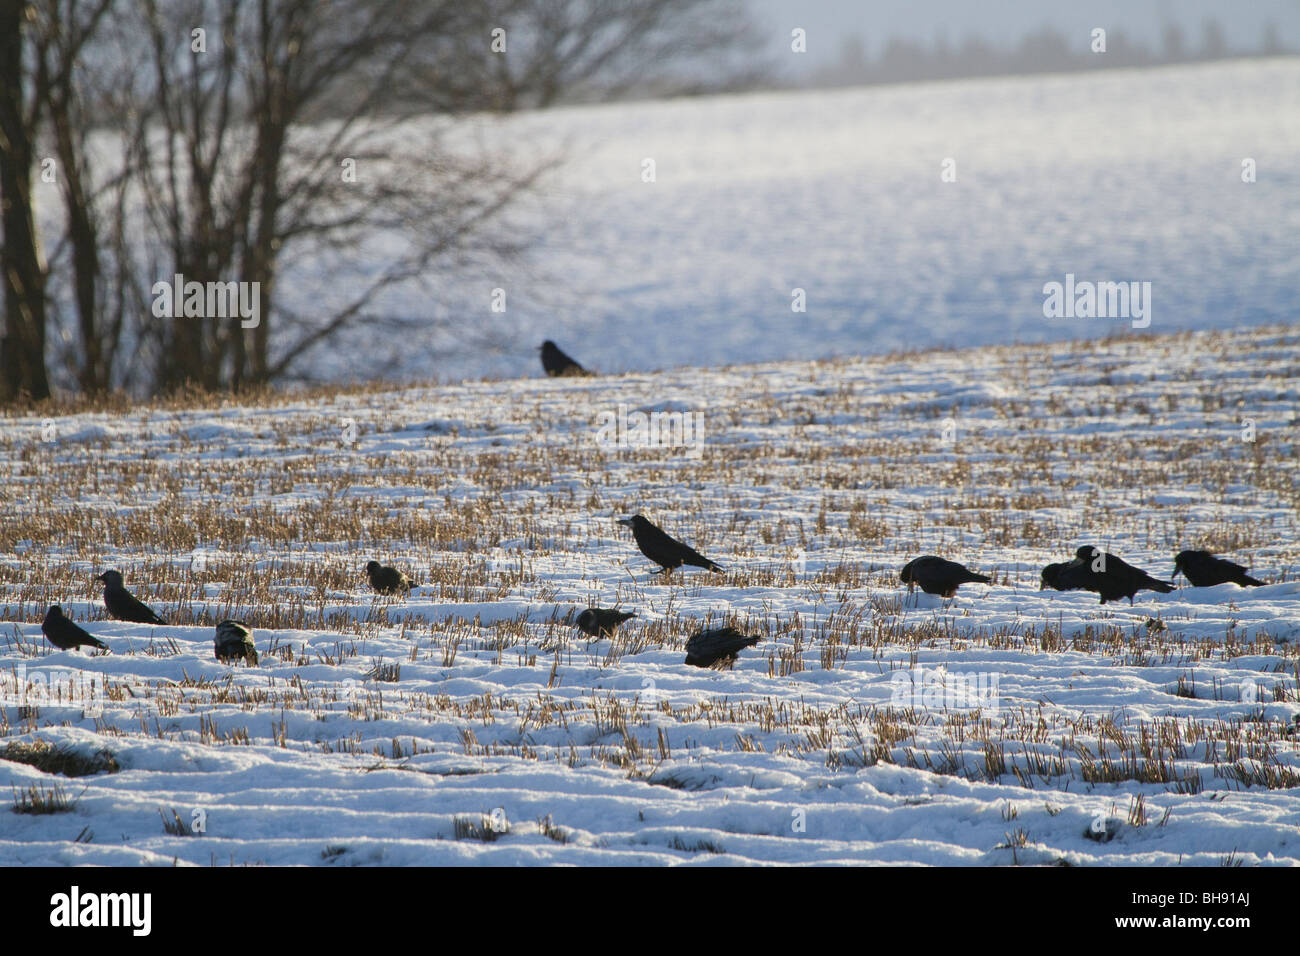 Rooks, Corvus frugilegus, d'alimentation en champ neigeux, Perthshire, Écosse Banque D'Images